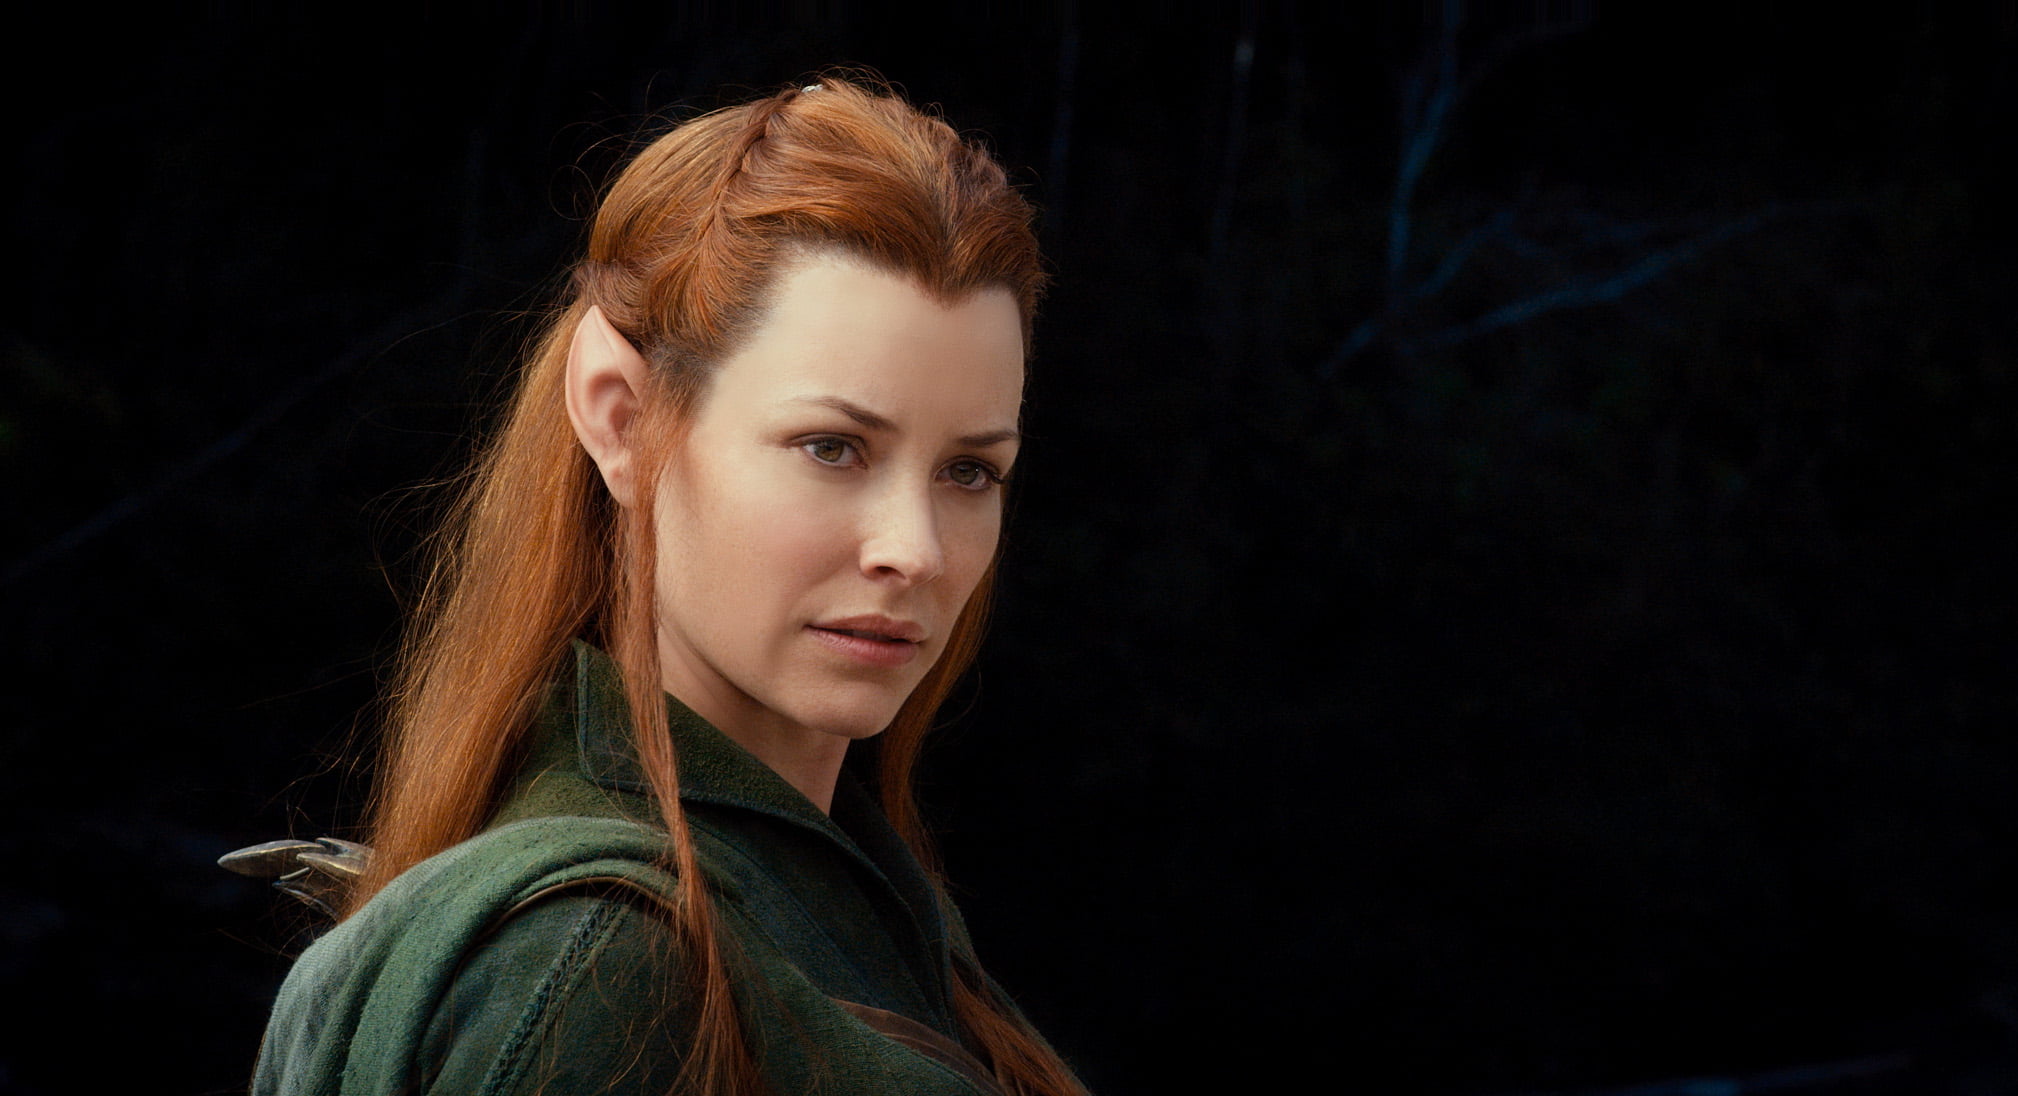 The Hobbit woman elf character